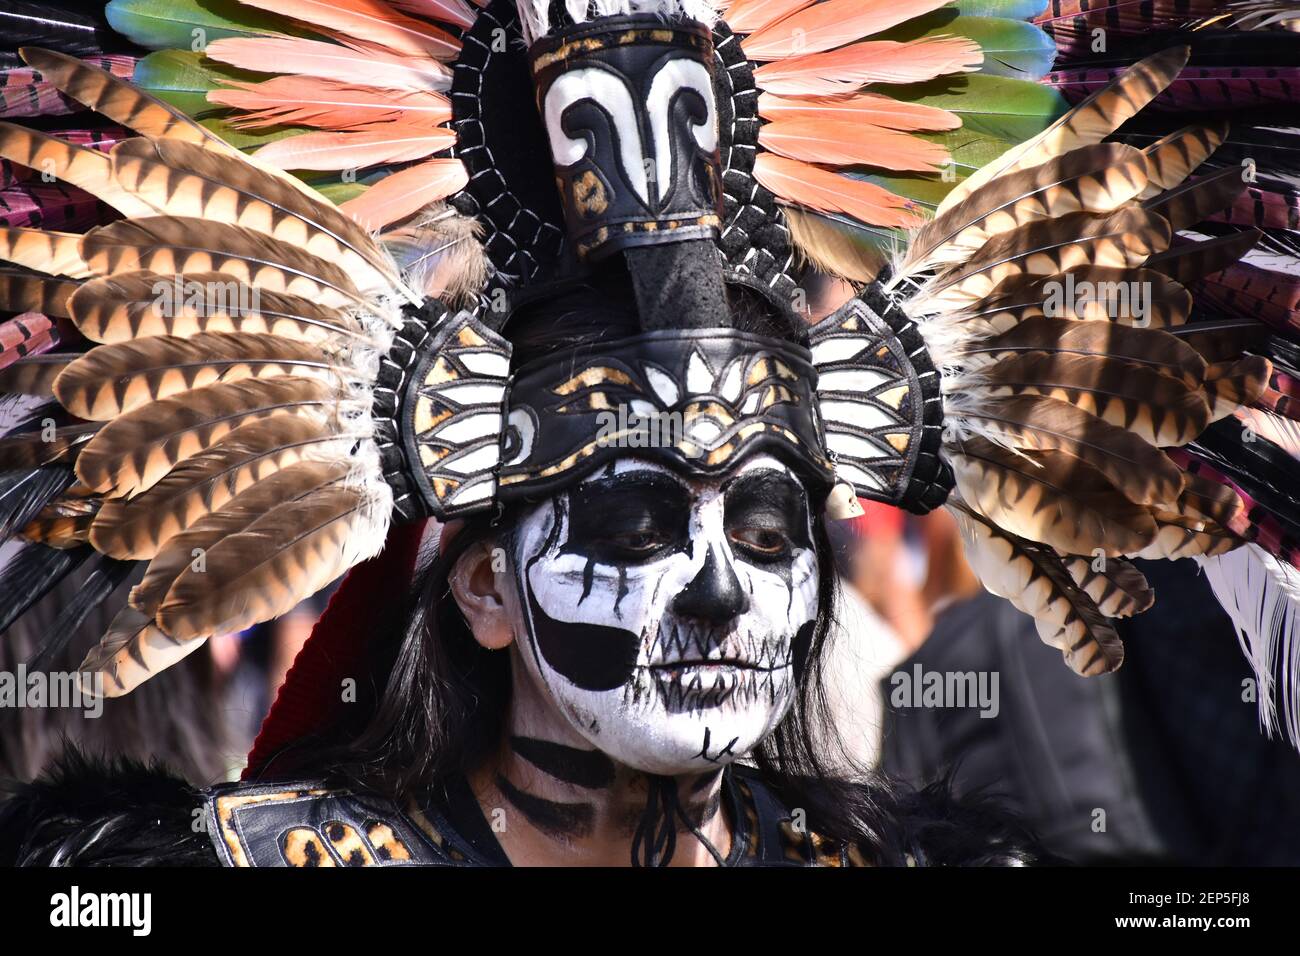 Misión presentación sobrino CIUDAD DE MÉXICO, MÉXICO - 1 DE NOVIEMBRE: Una niña con el vestido  prehispánico posará para hacer fotos durante la mega ofrenda como parte de  la celebración de Dia de muertos para